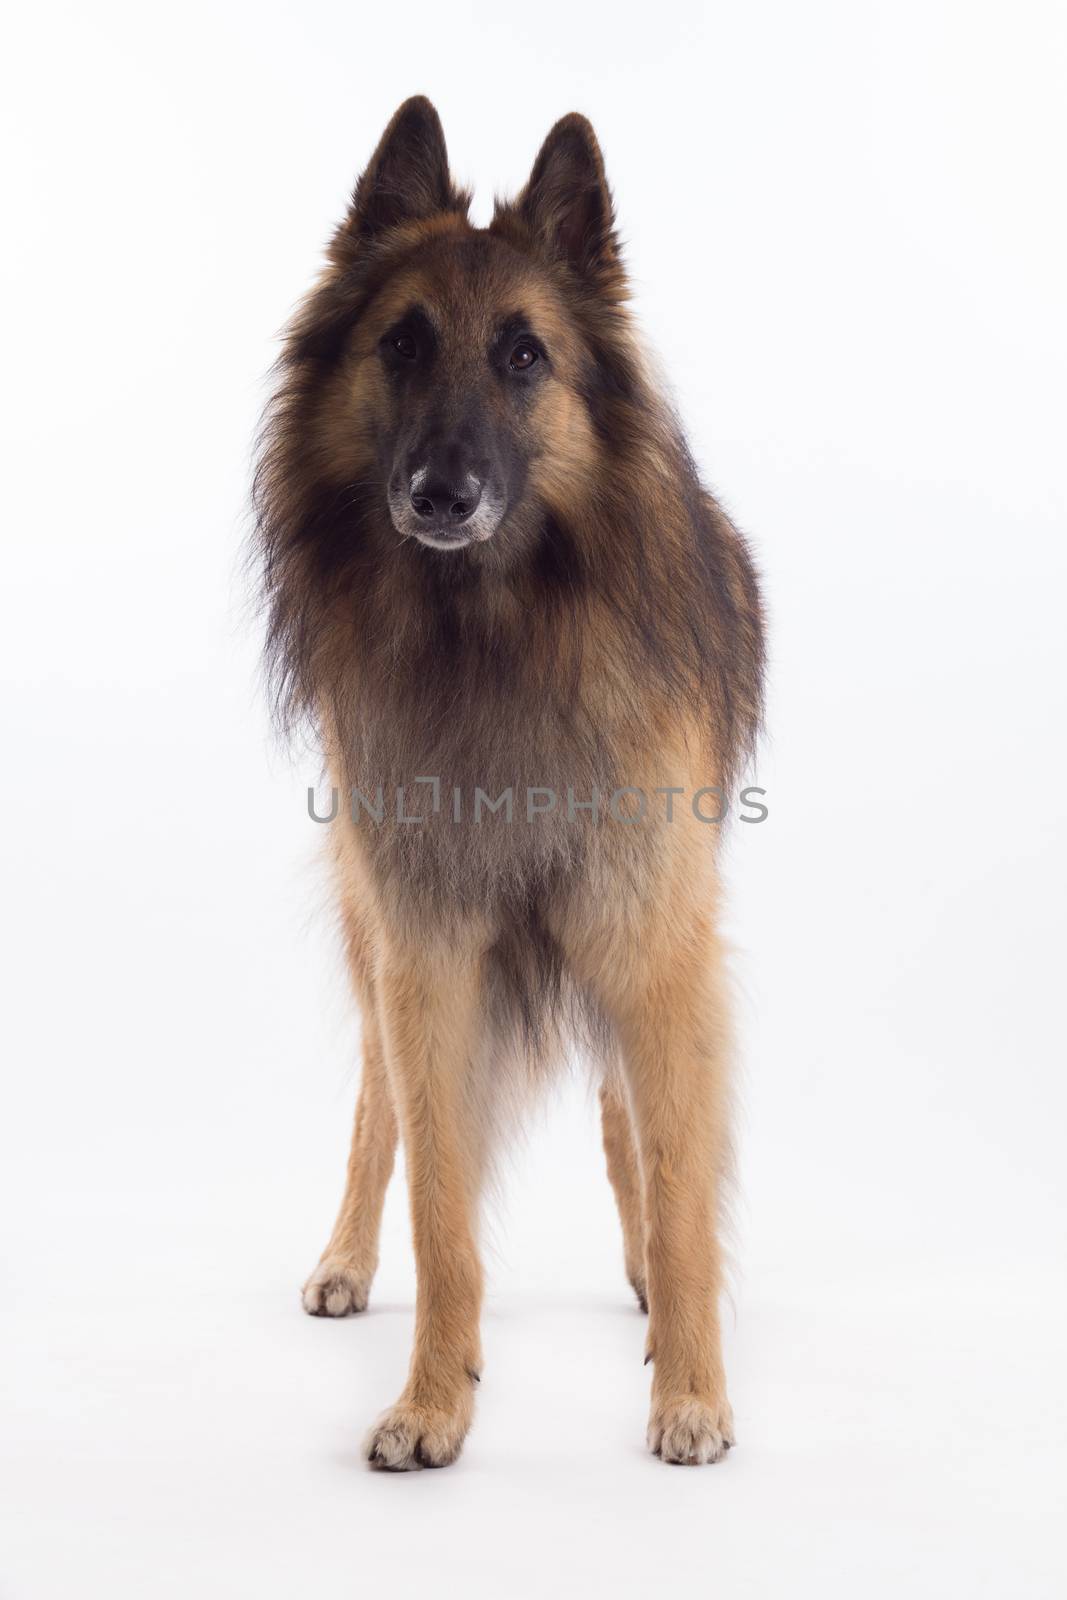 Tervuren dog standing, isolated on white studio background